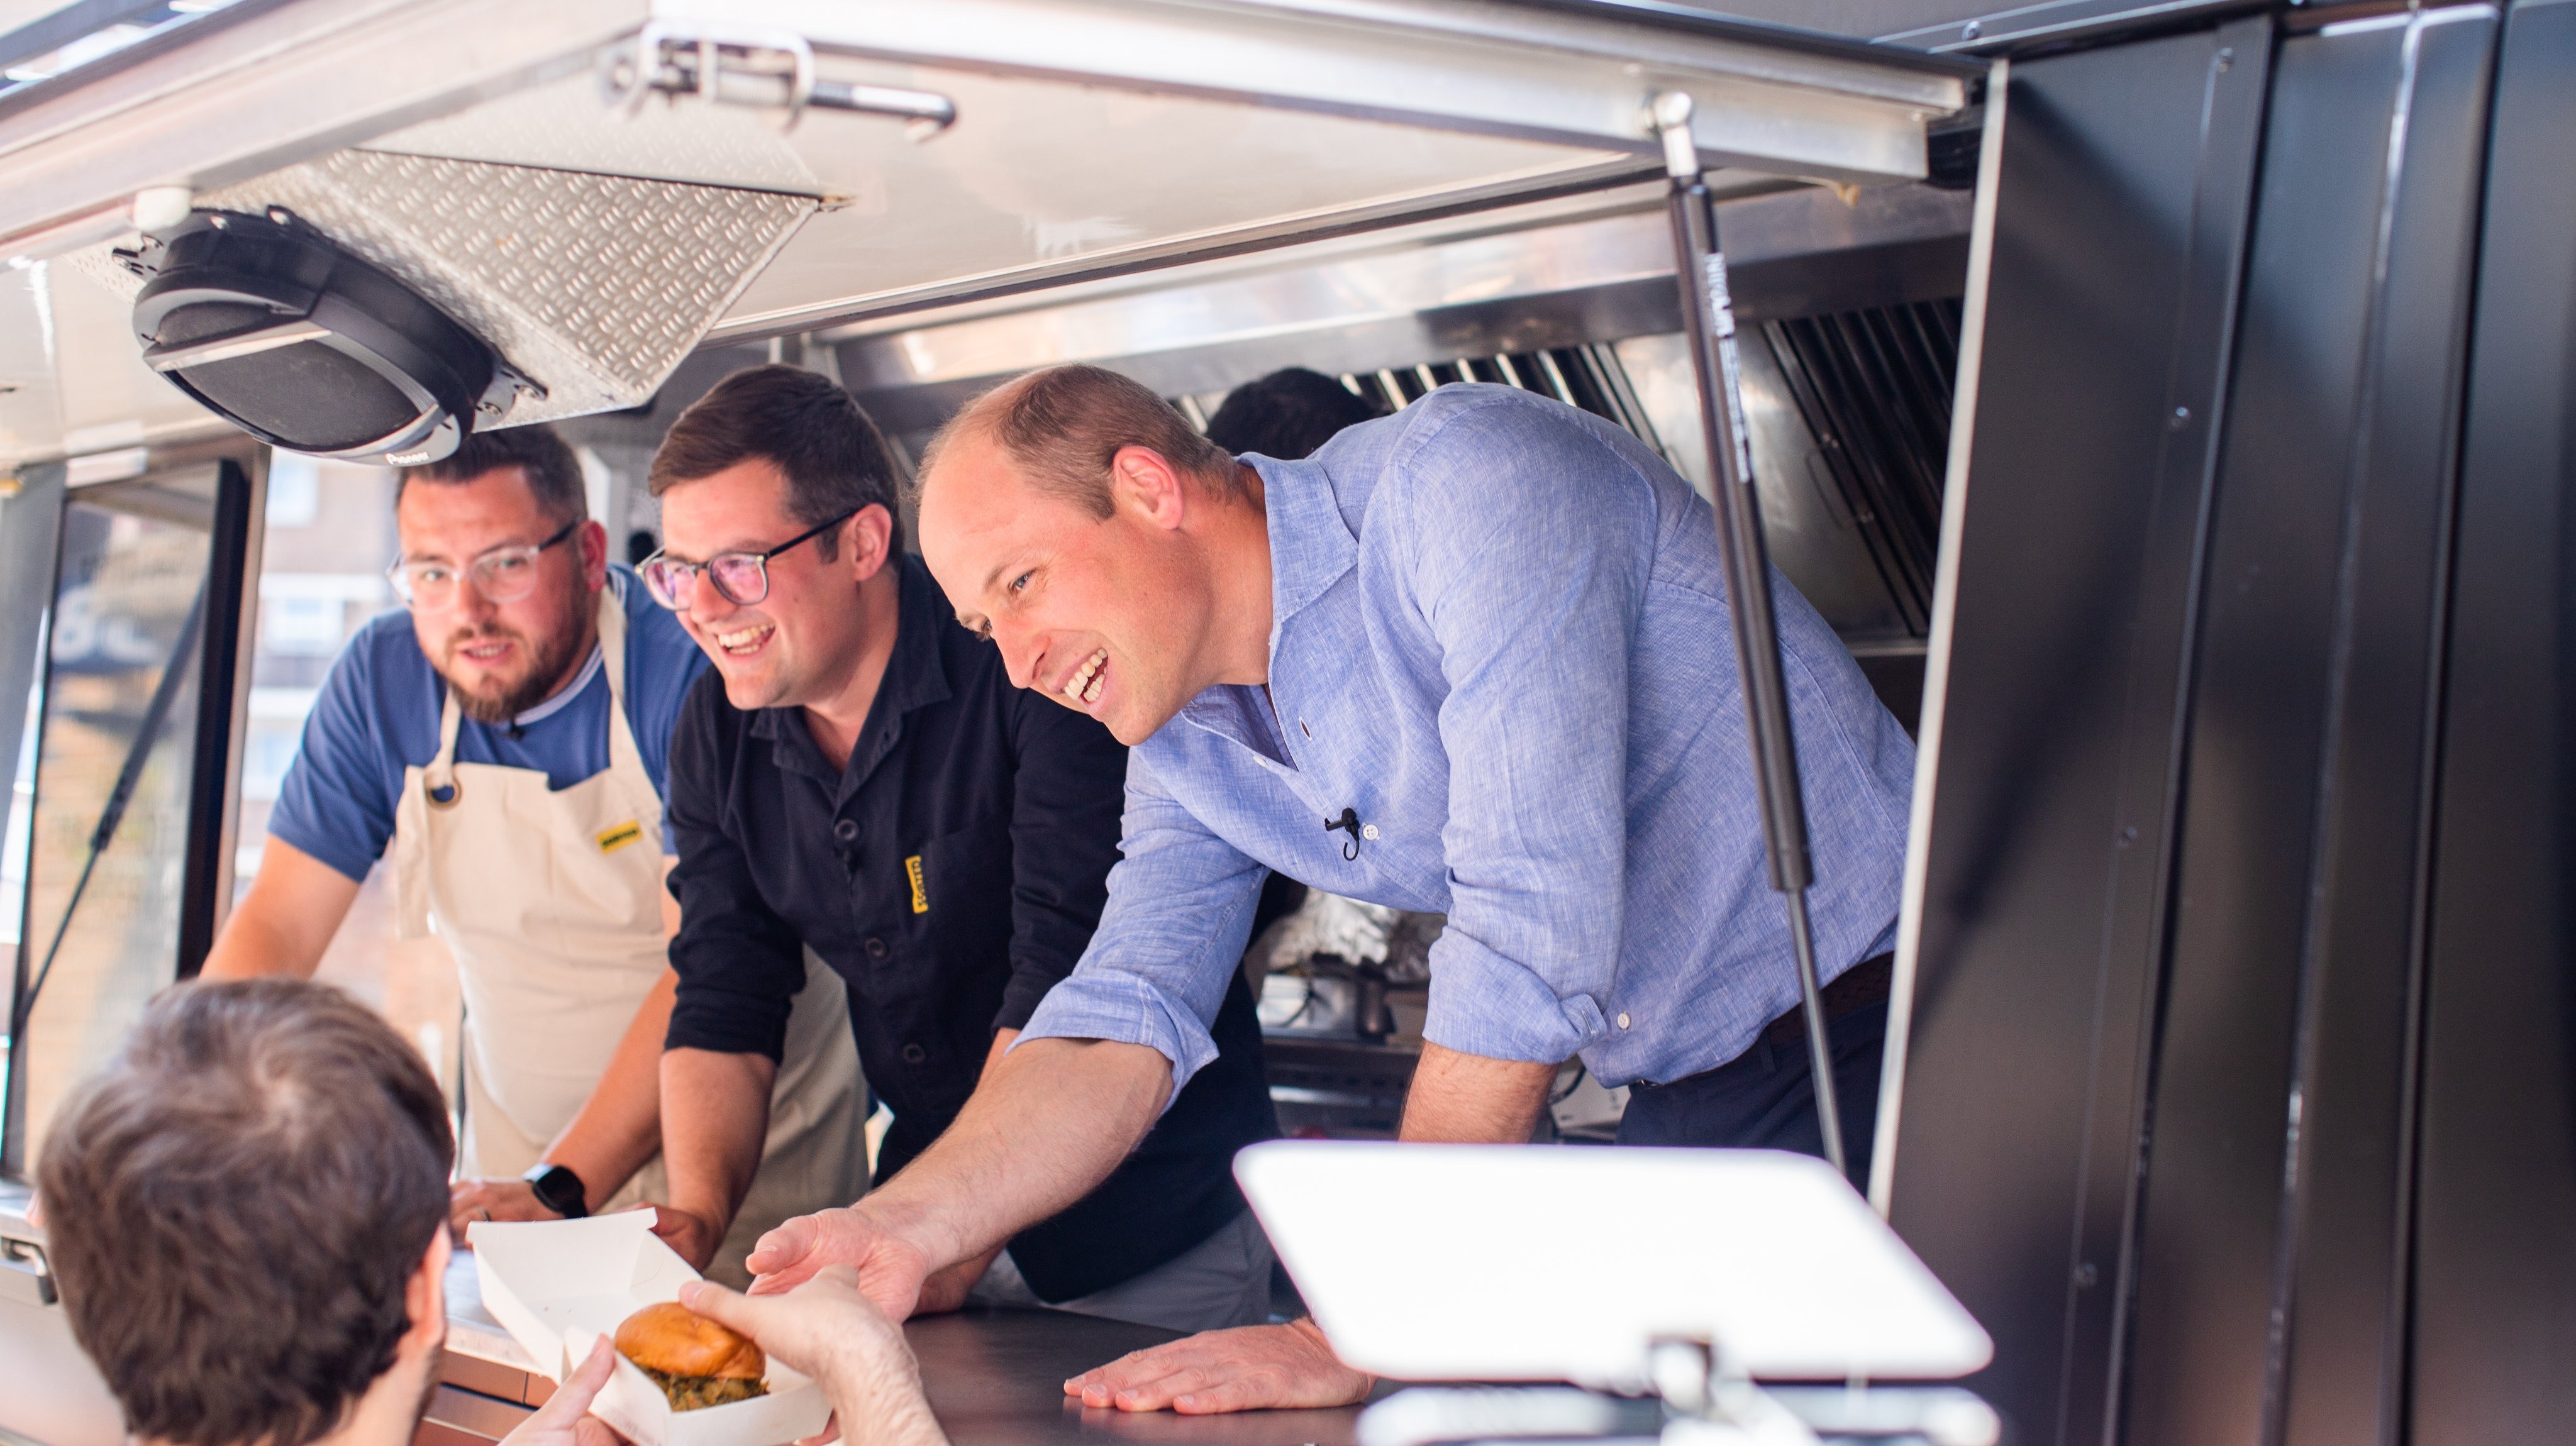 El príncipe William sorprendió a todos en Londres y repartió “hamburguesas ecológicas” en un food truck